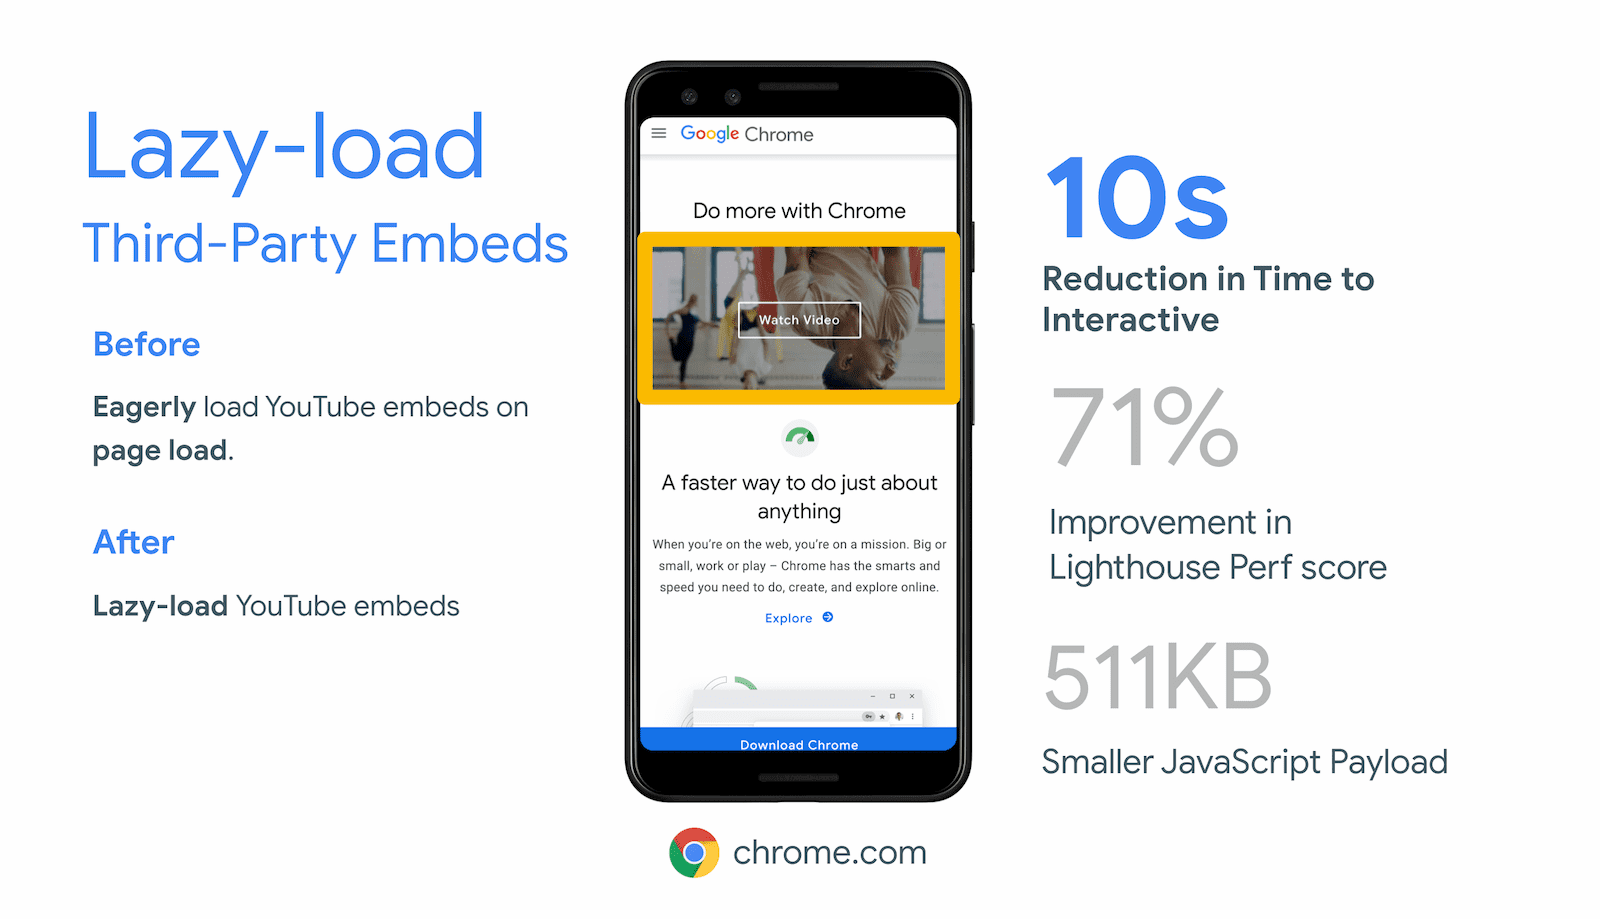 Chrome.com a réduit le délai avant interactivité de 10 secondes grâce au chargement différé d&#39;iFrames hors écran pour l&#39;intégration de vidéos YouTube.